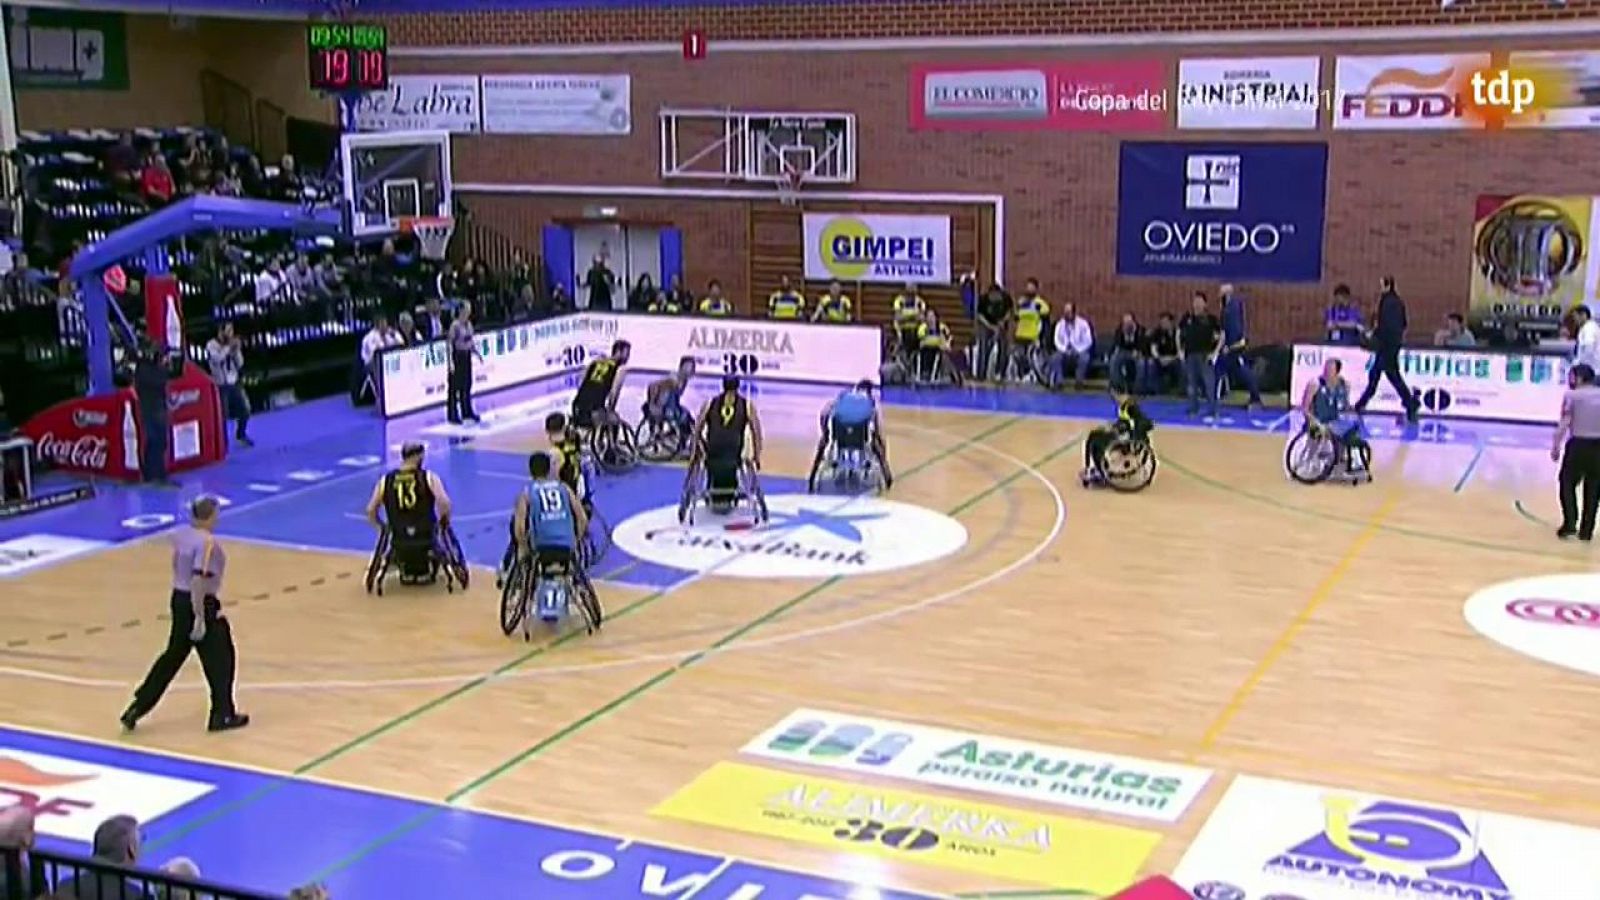 Quédate en casa con TDP - Baloncesto en silla de ruedas - Final Copa del Rey 2017: Ilunion - Albacete